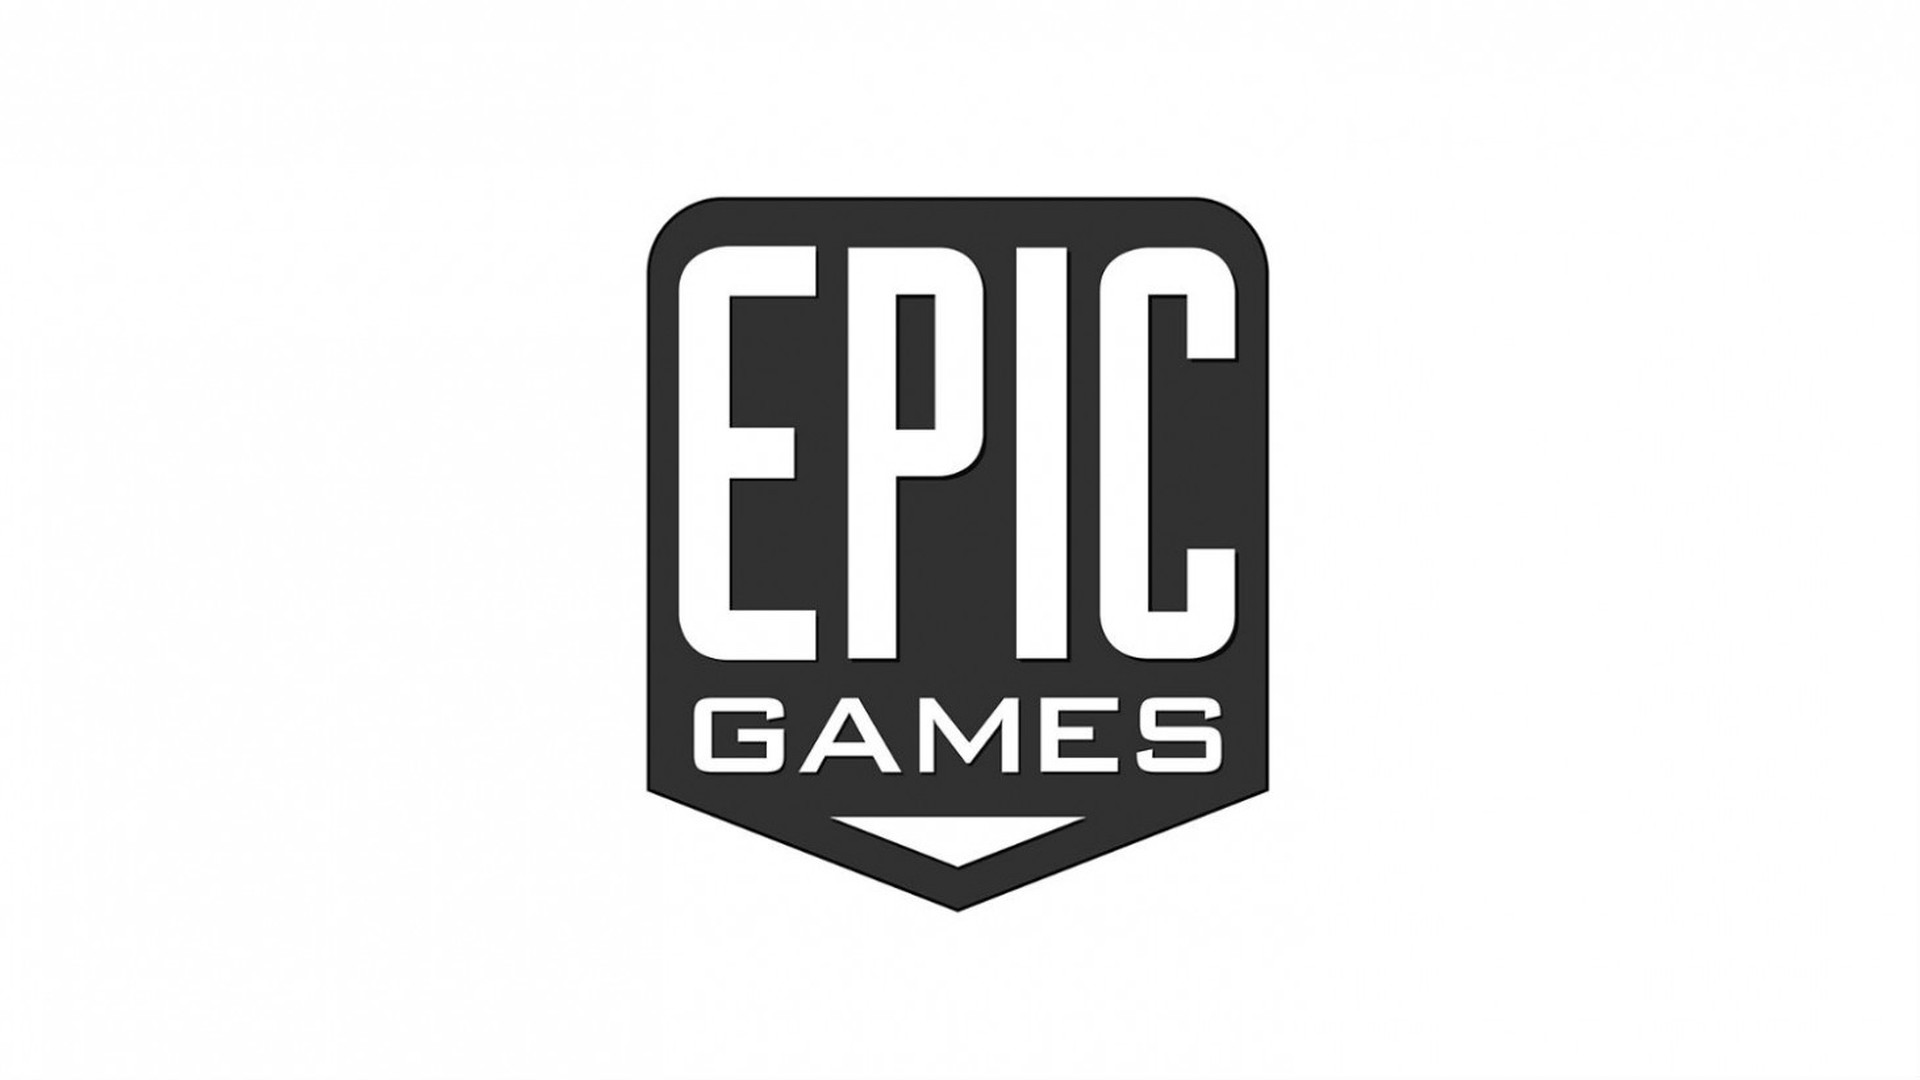 Epic Games’in Bu Haftaki Ücretsiz Oyunları!